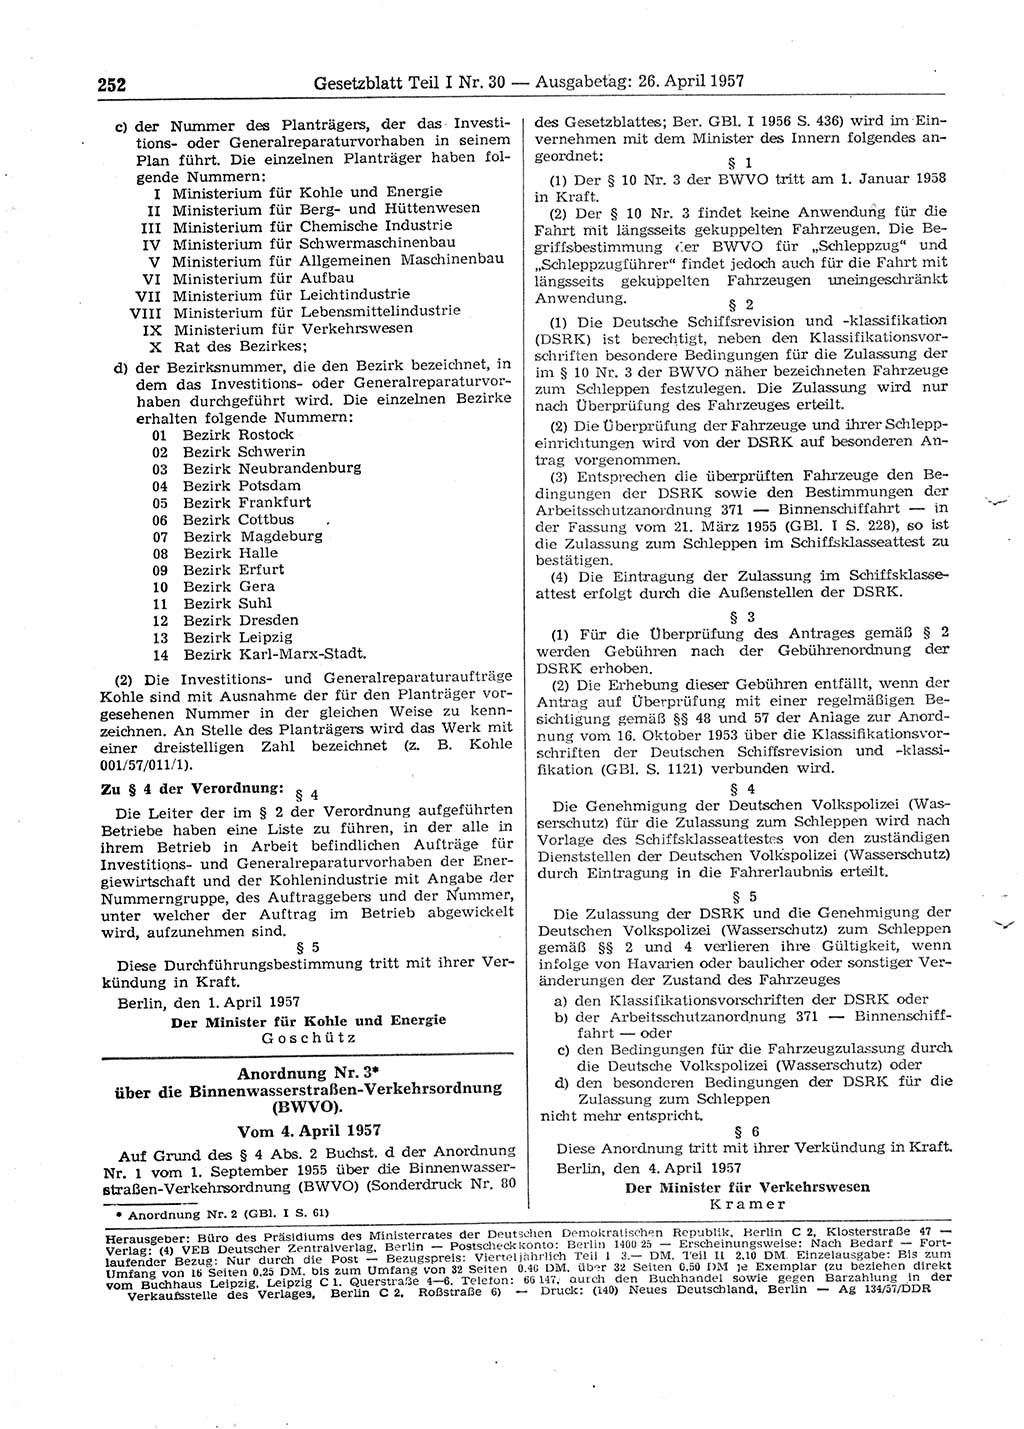 Gesetzblatt (GBl.) der Deutschen Demokratischen Republik (DDR) Teil Ⅰ 1957, Seite 252 (GBl. DDR Ⅰ 1957, S. 252)